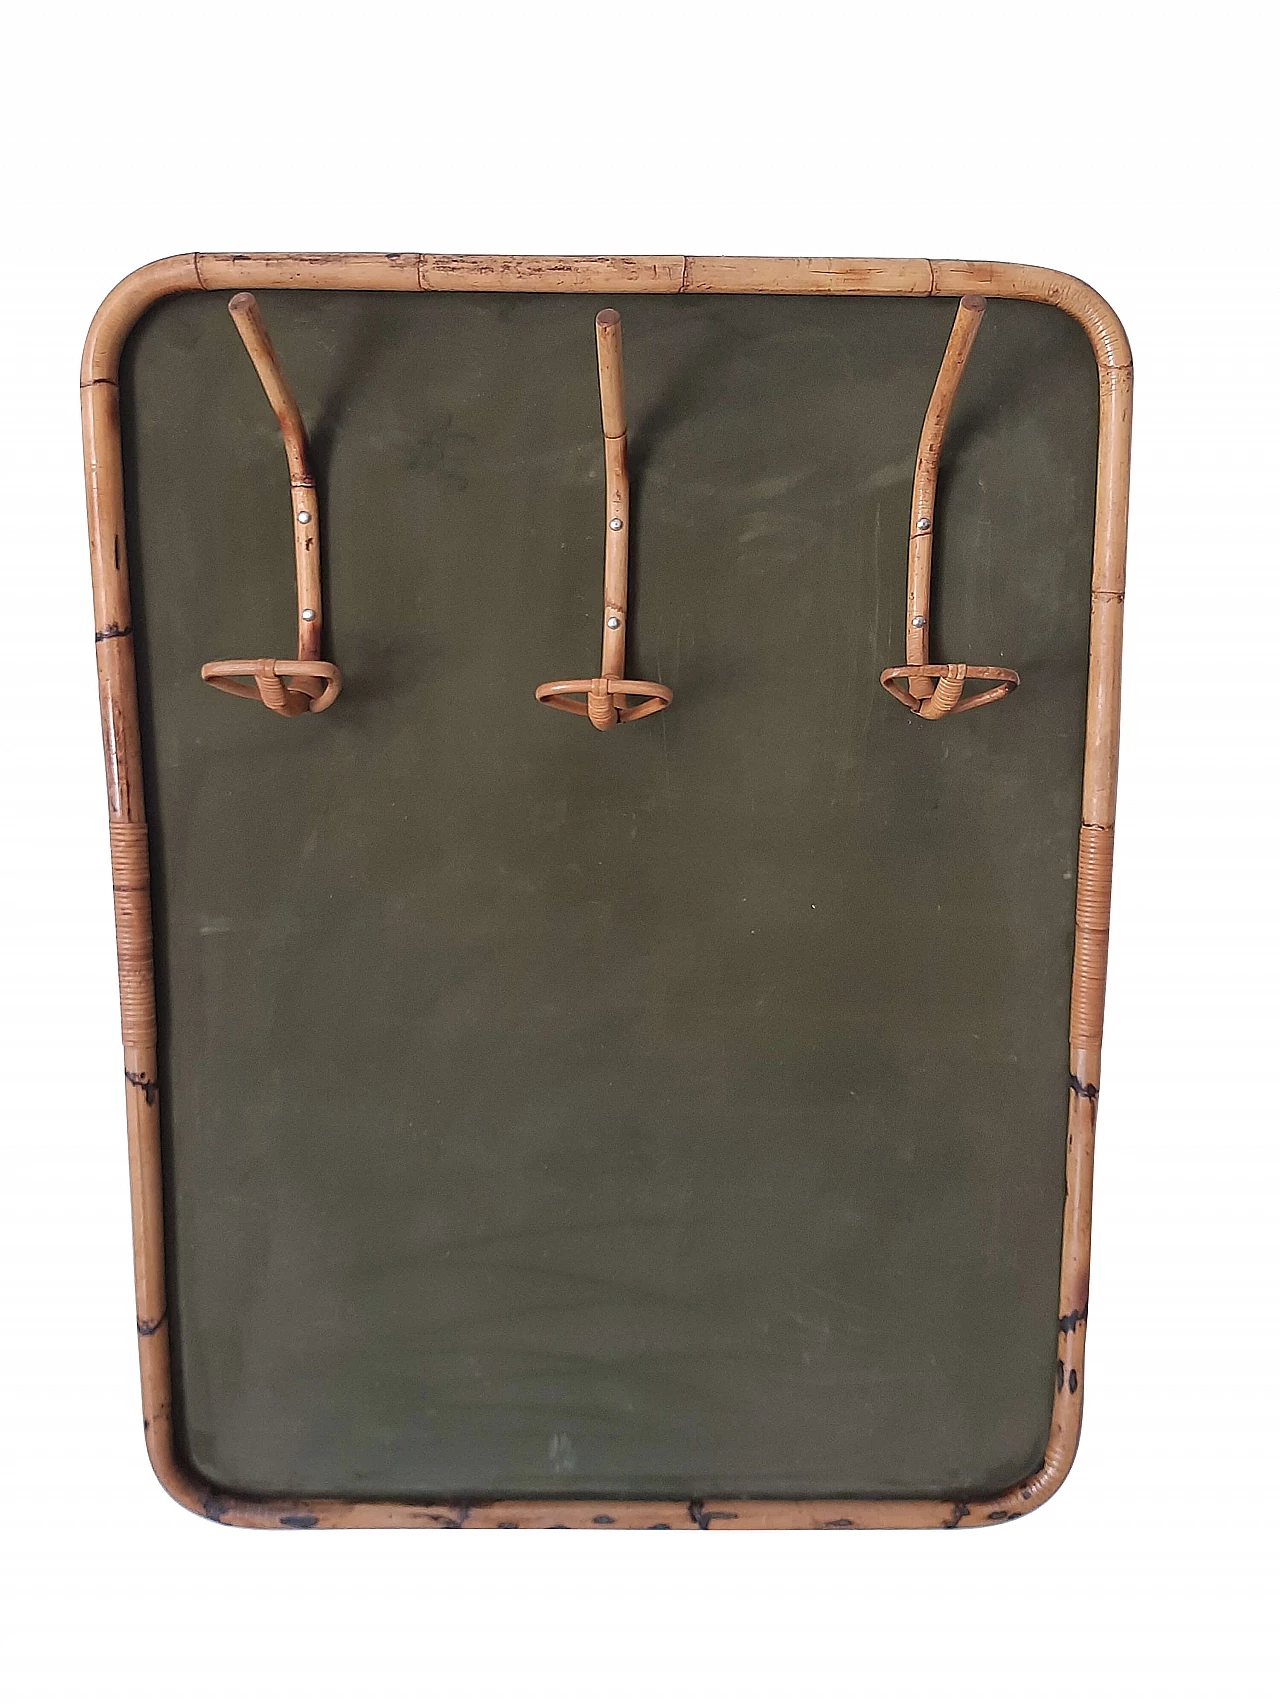 Wall-mounted bamboo coat rack, 70s 1230693